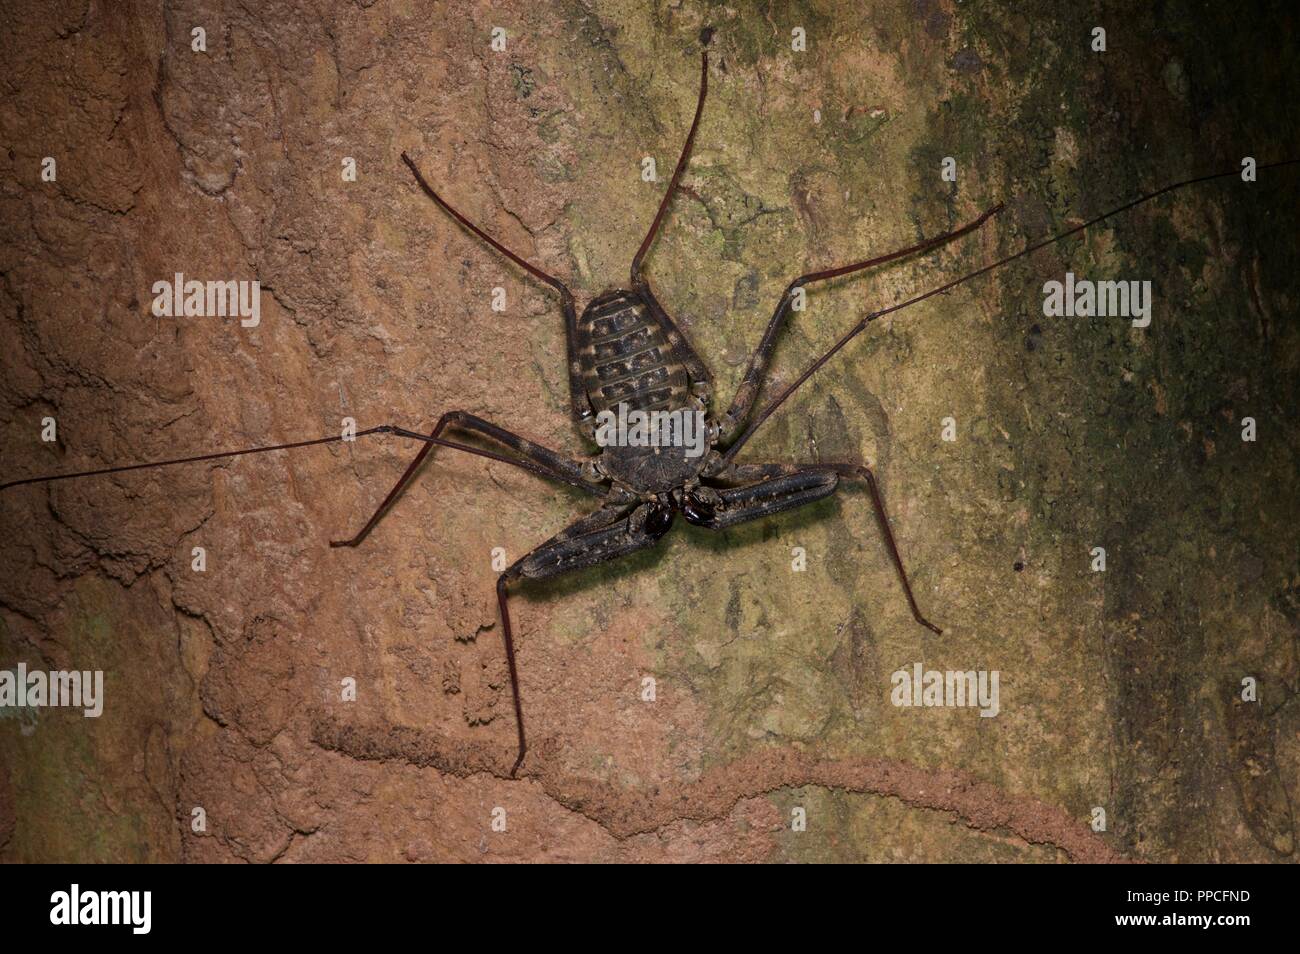 Un fouet sans queue (scorpion Damon medius) sur un tronc d'arbre dans la nuit dans la réserve forestière de Bobiri, Ghana, Afrique de l'Ouest Banque D'Images